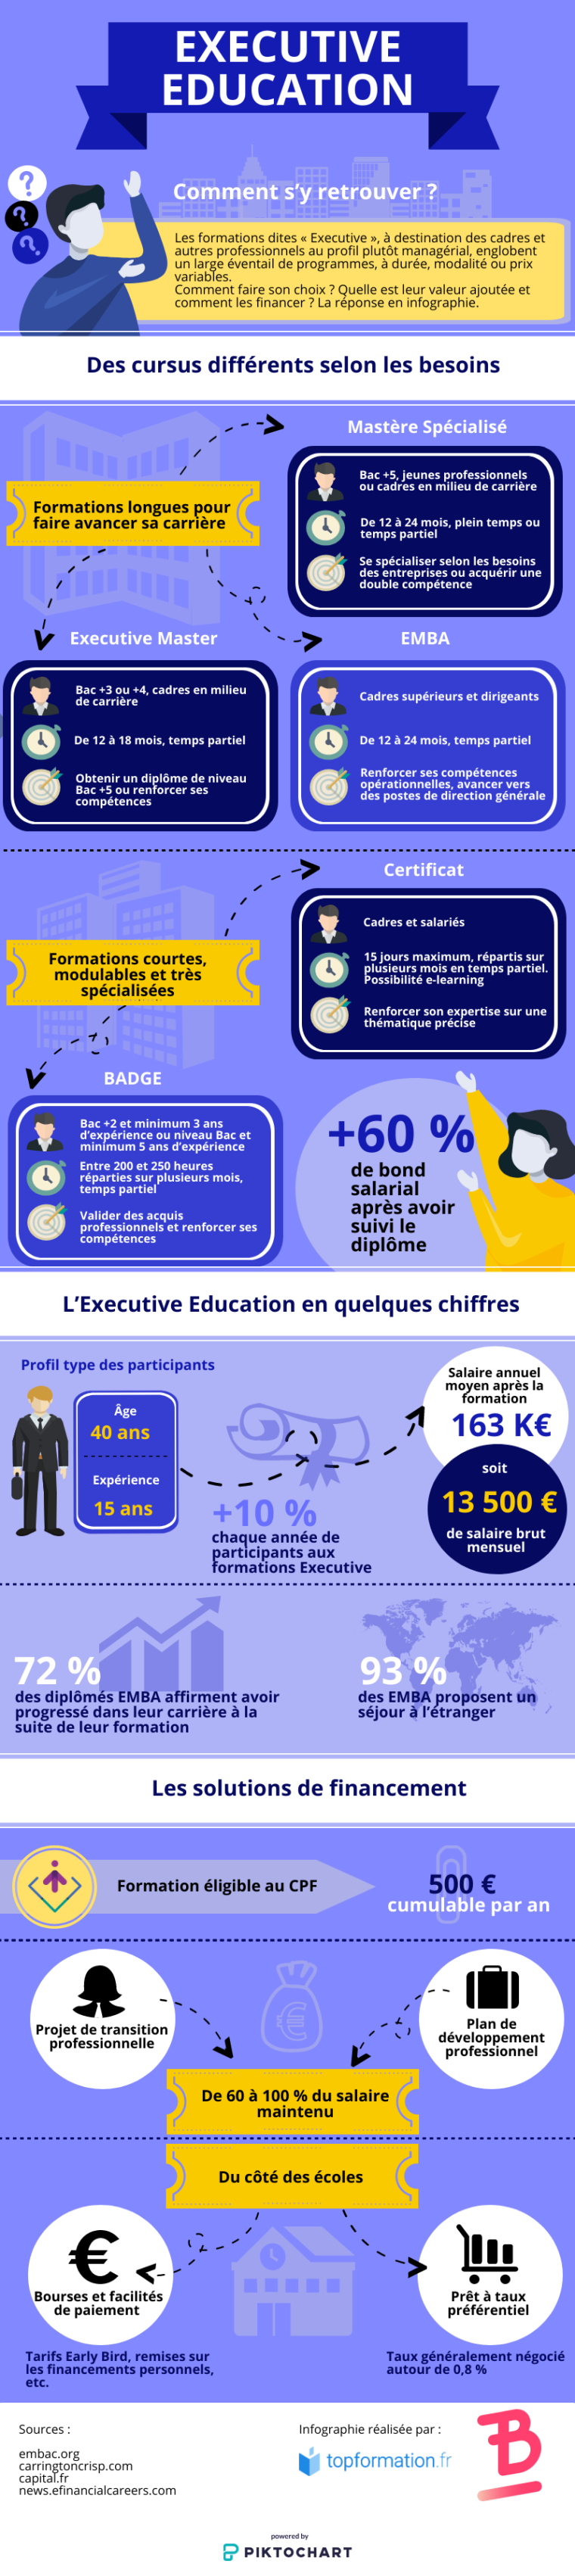 Infographie sur l'Executive Education